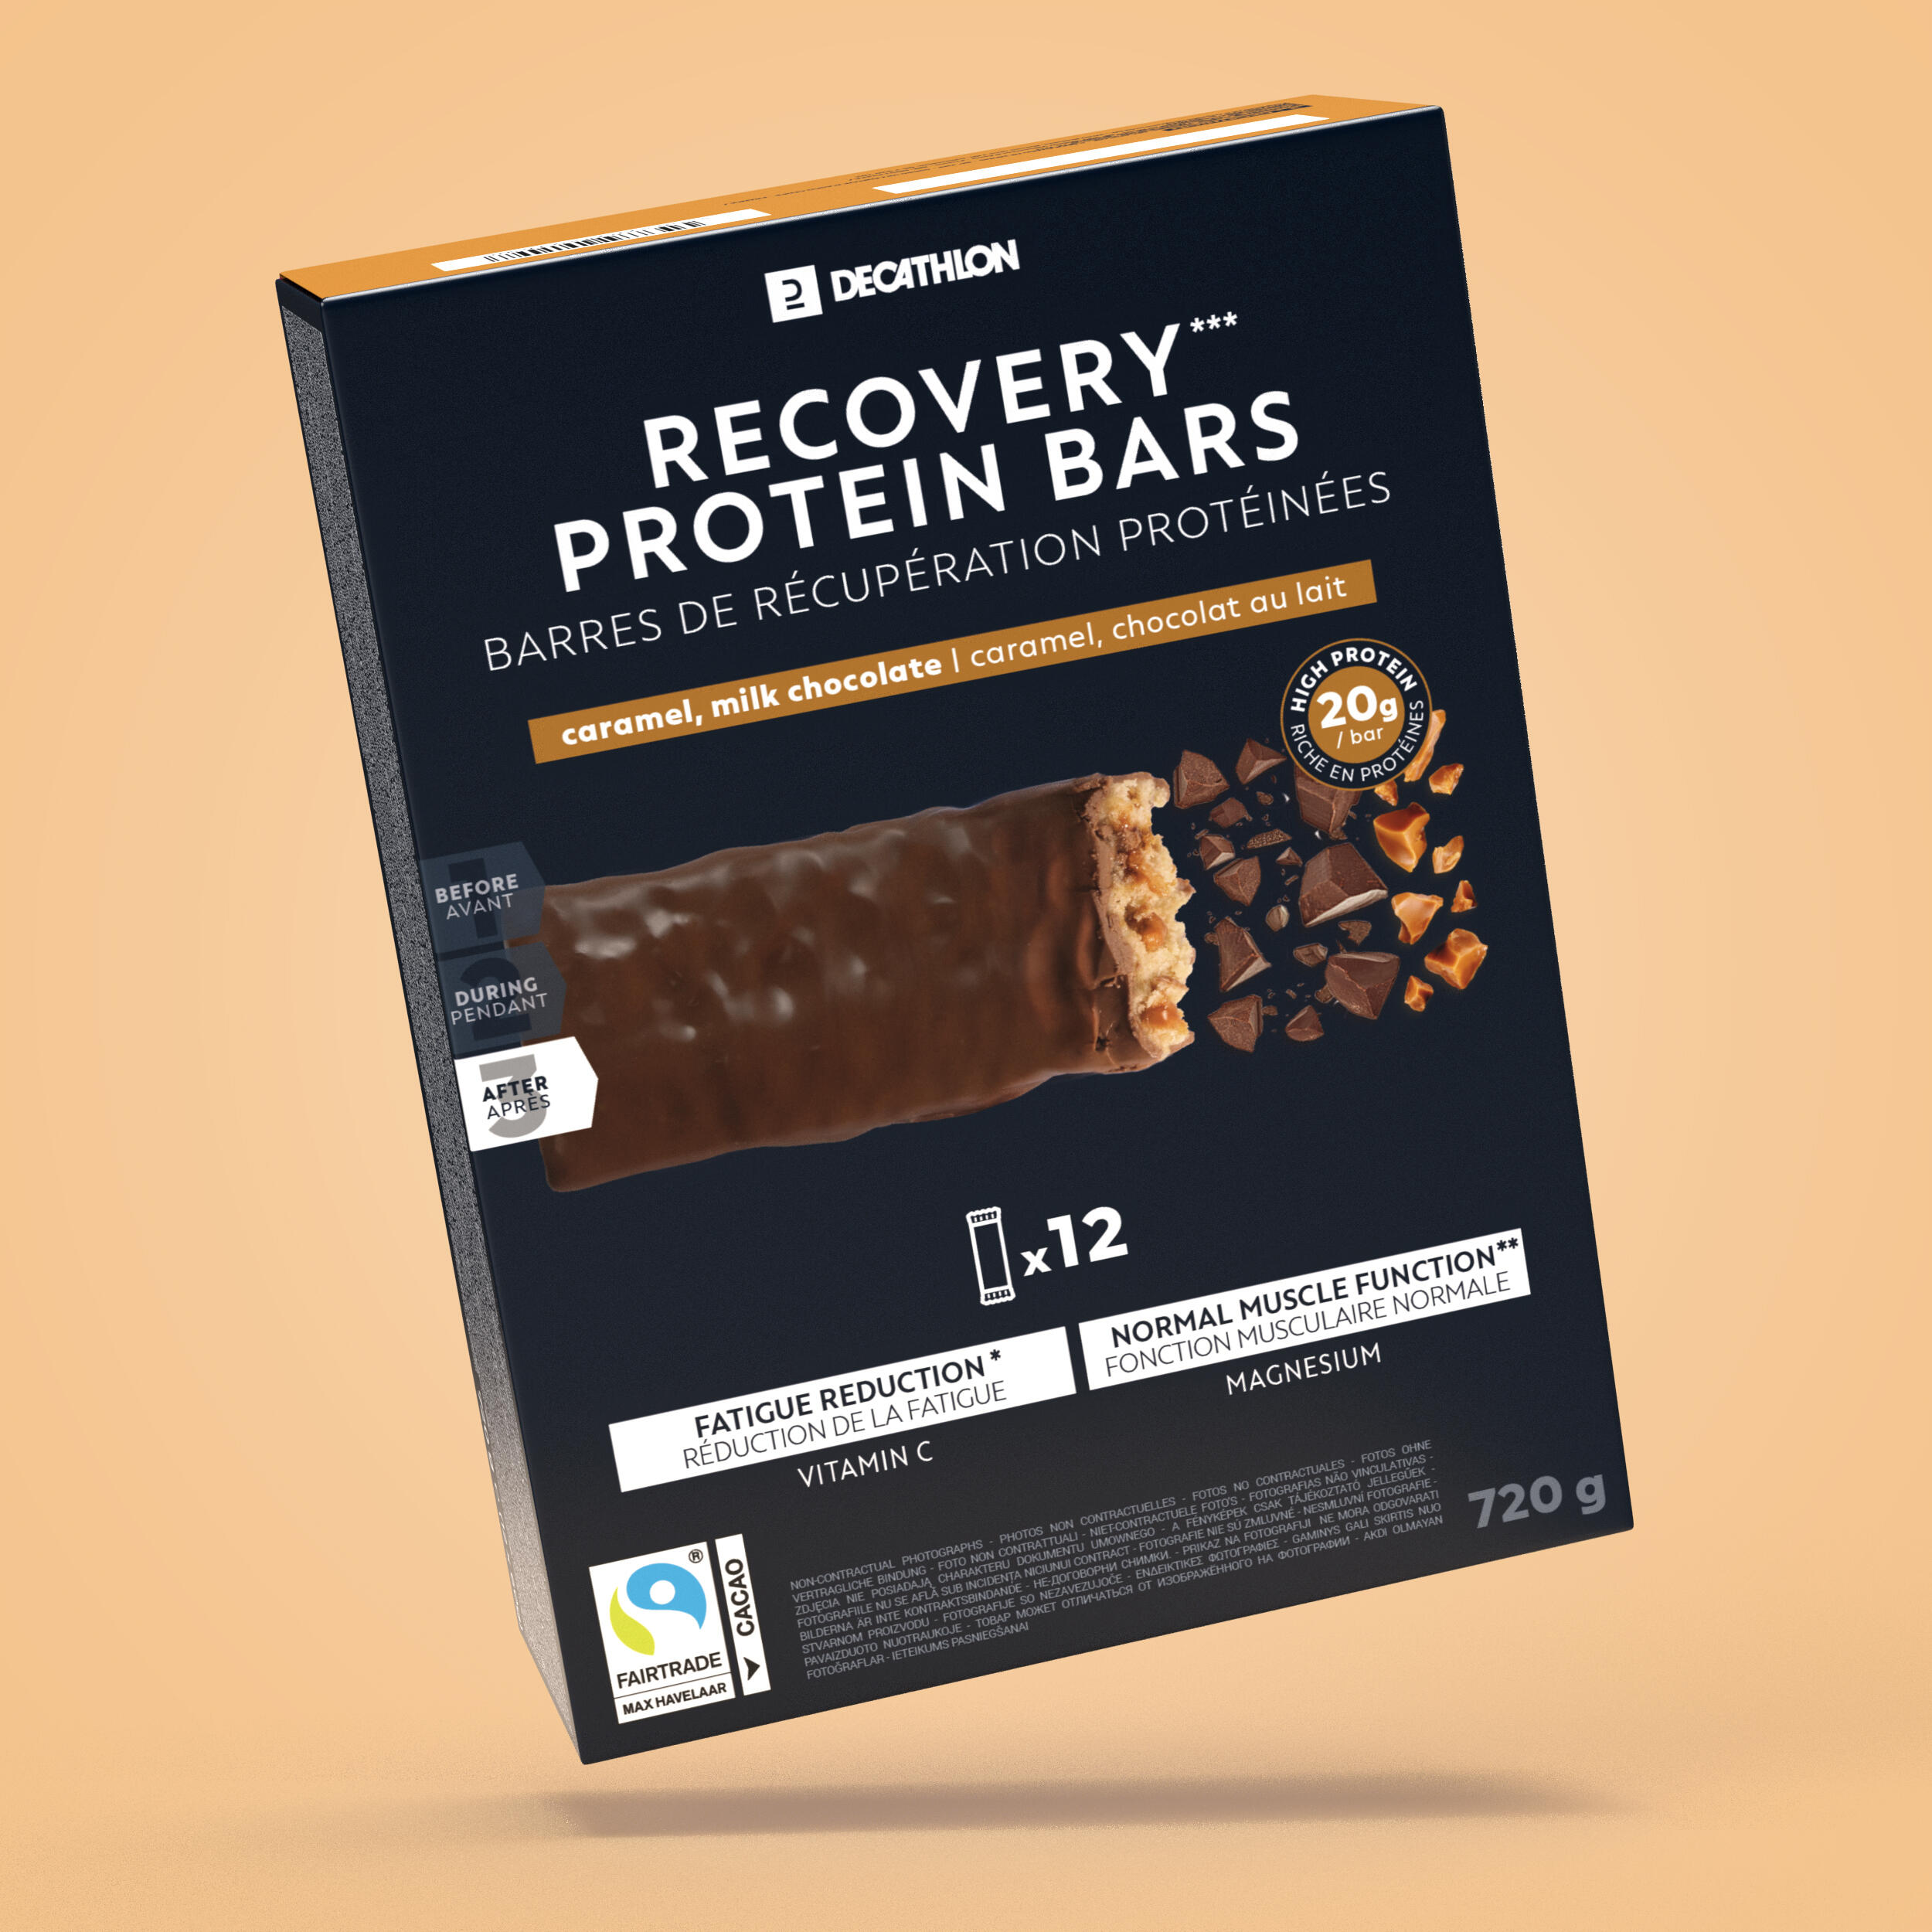 Baton proteine pentru recuperare, cu aromă Ciocolată și Caramel *12 12 imagine 2022